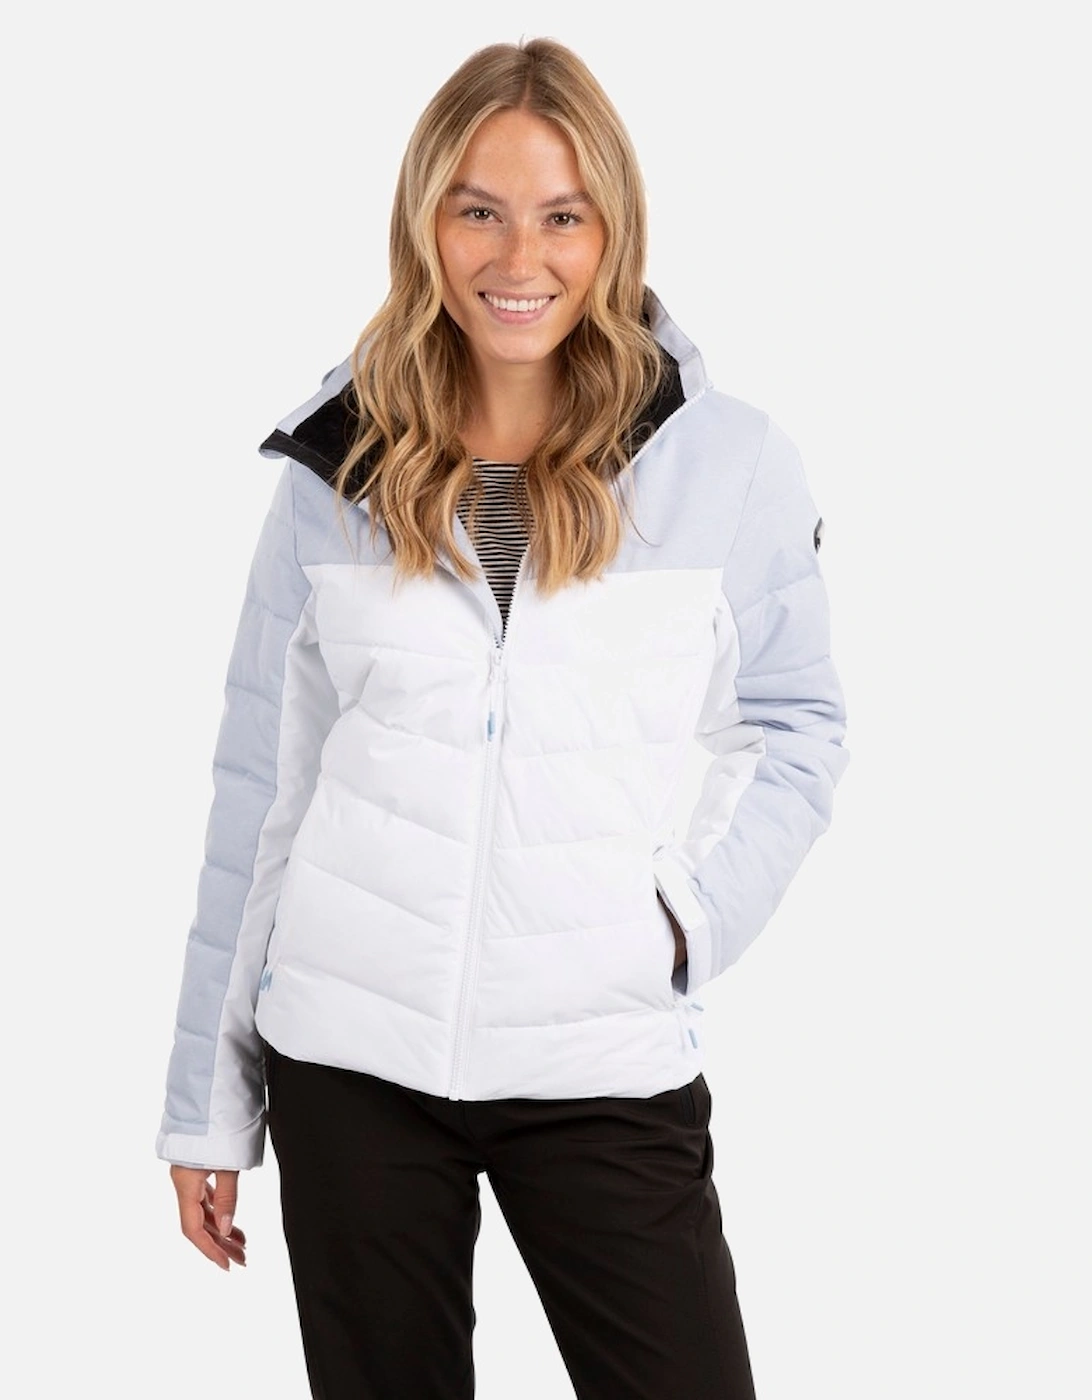 Womens/Ladies Flattery Padded Hooded Waterproof Jacket